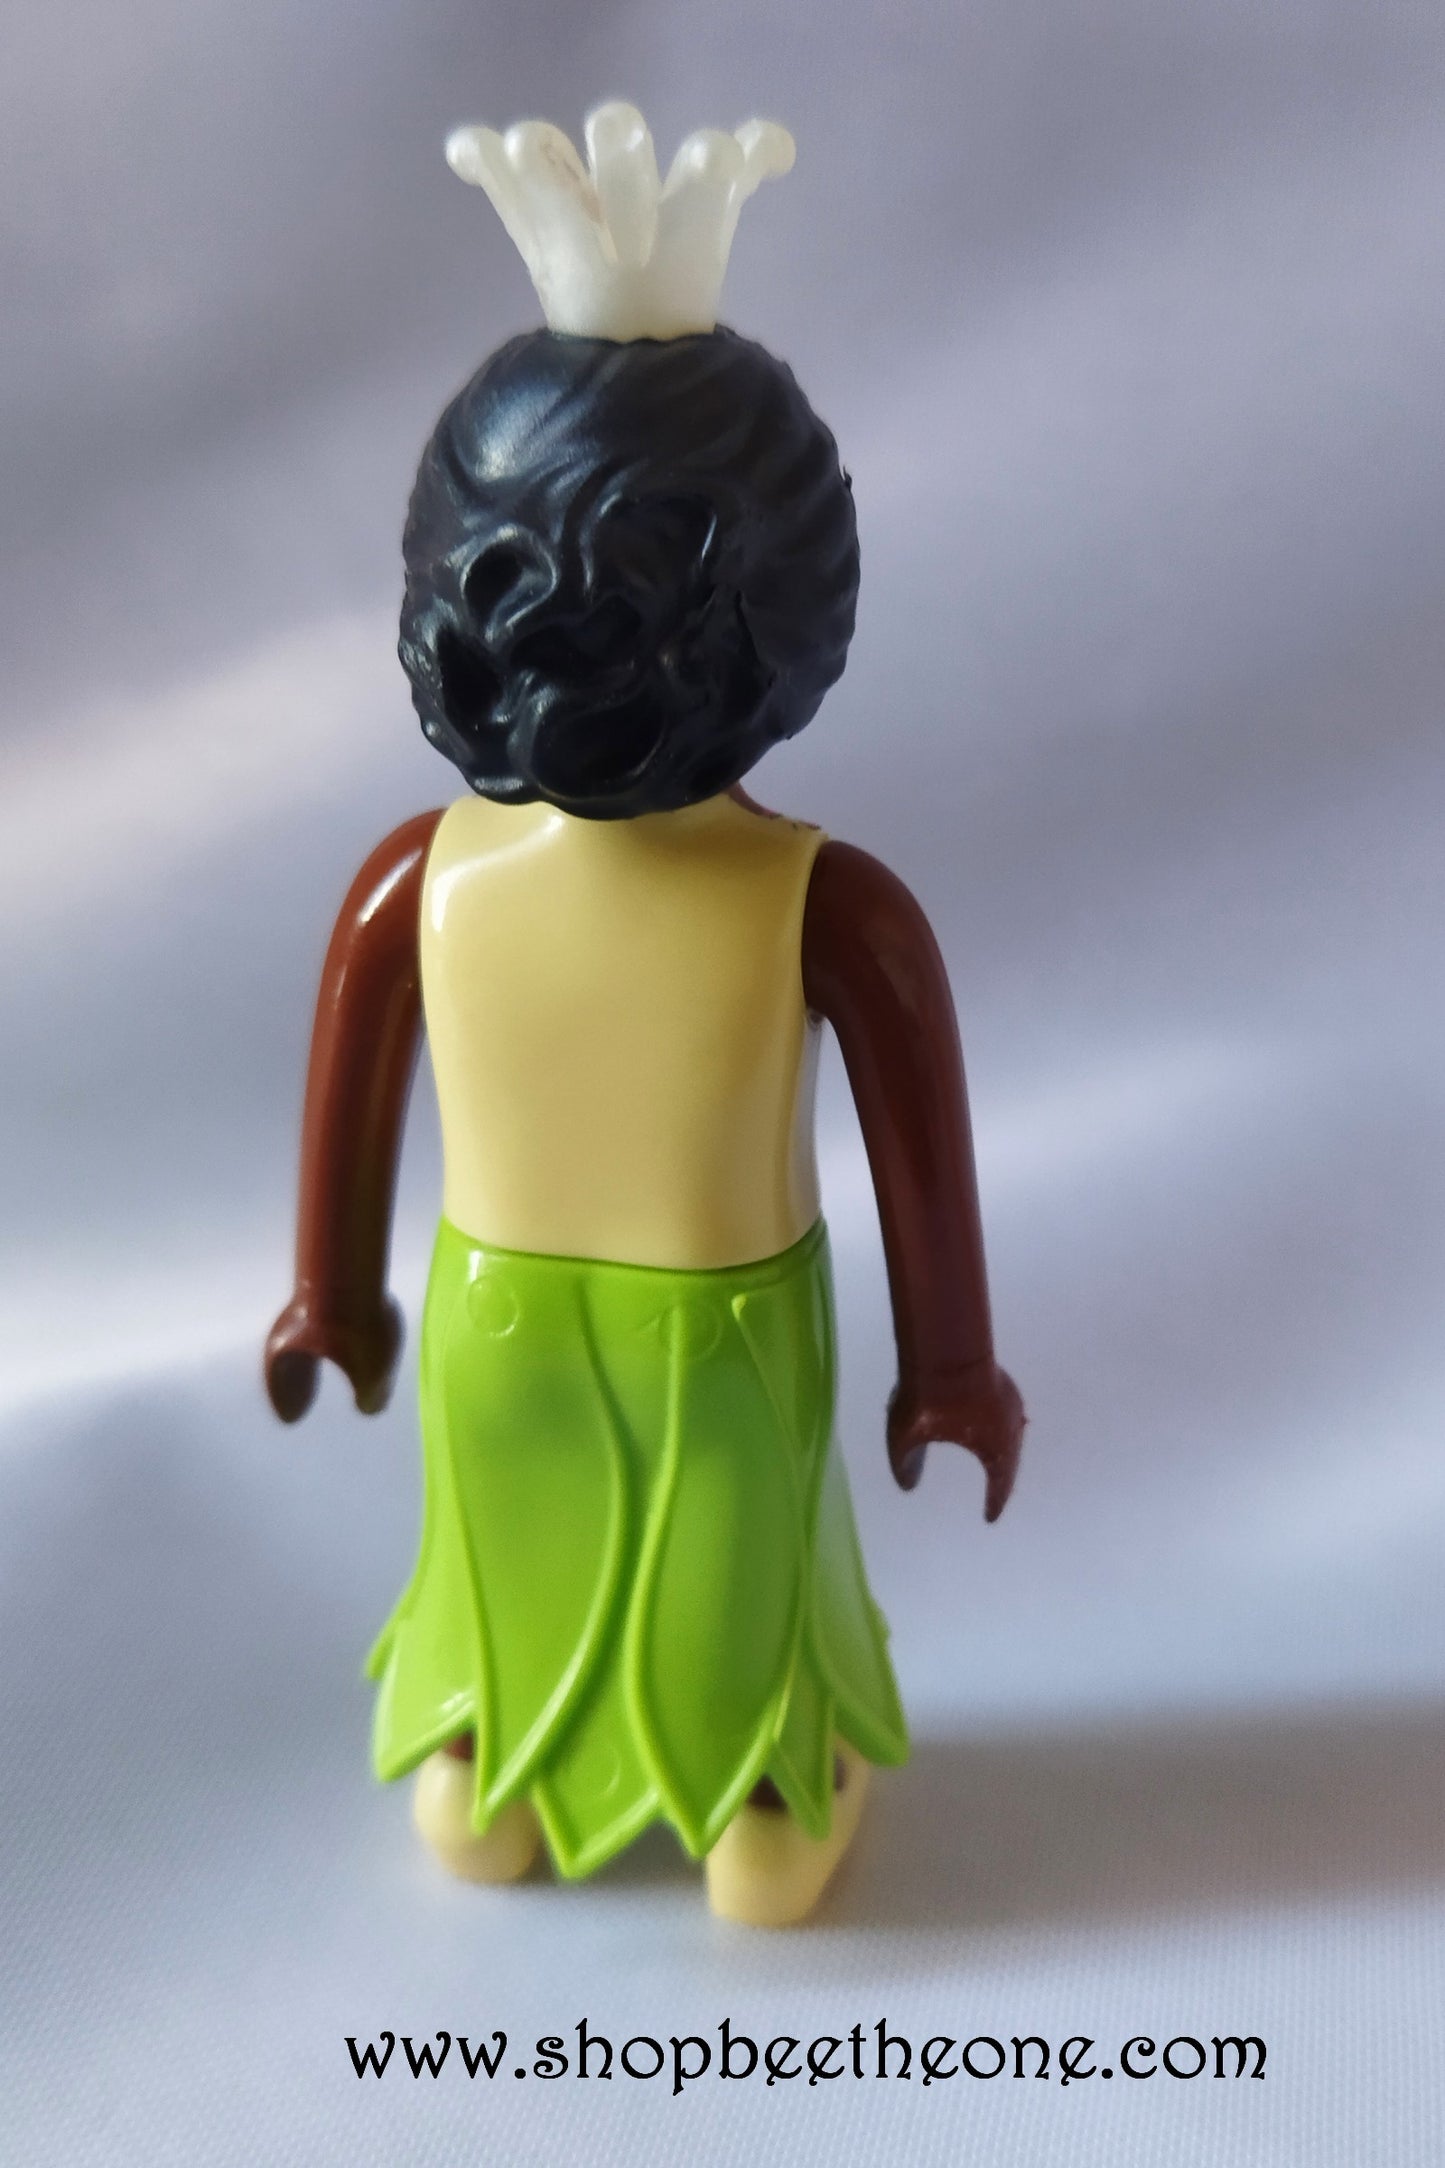 Collection Fées et Chevaliers - Playmobil/Quick 2015 - Figurine Klicky Fée verte et Fée rouge